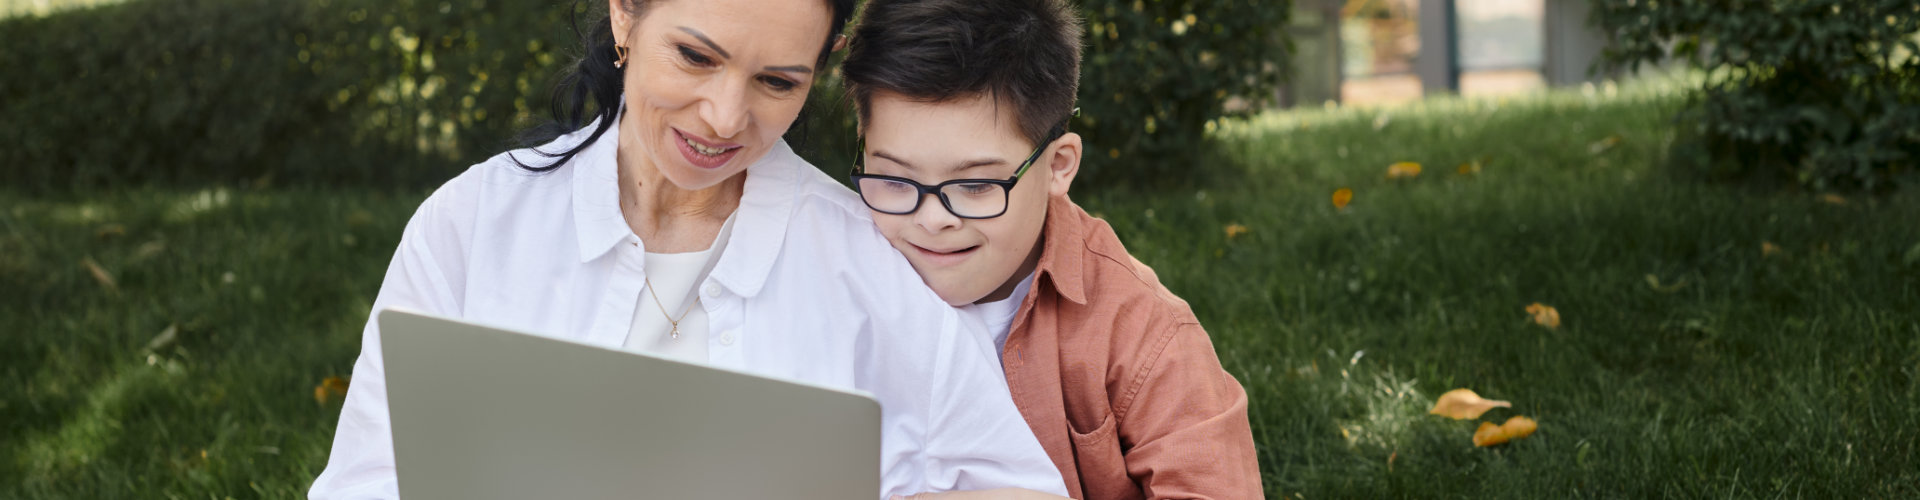 Junge mit Down-Symdrom schaut mit seiner Mutter auf einen Computer